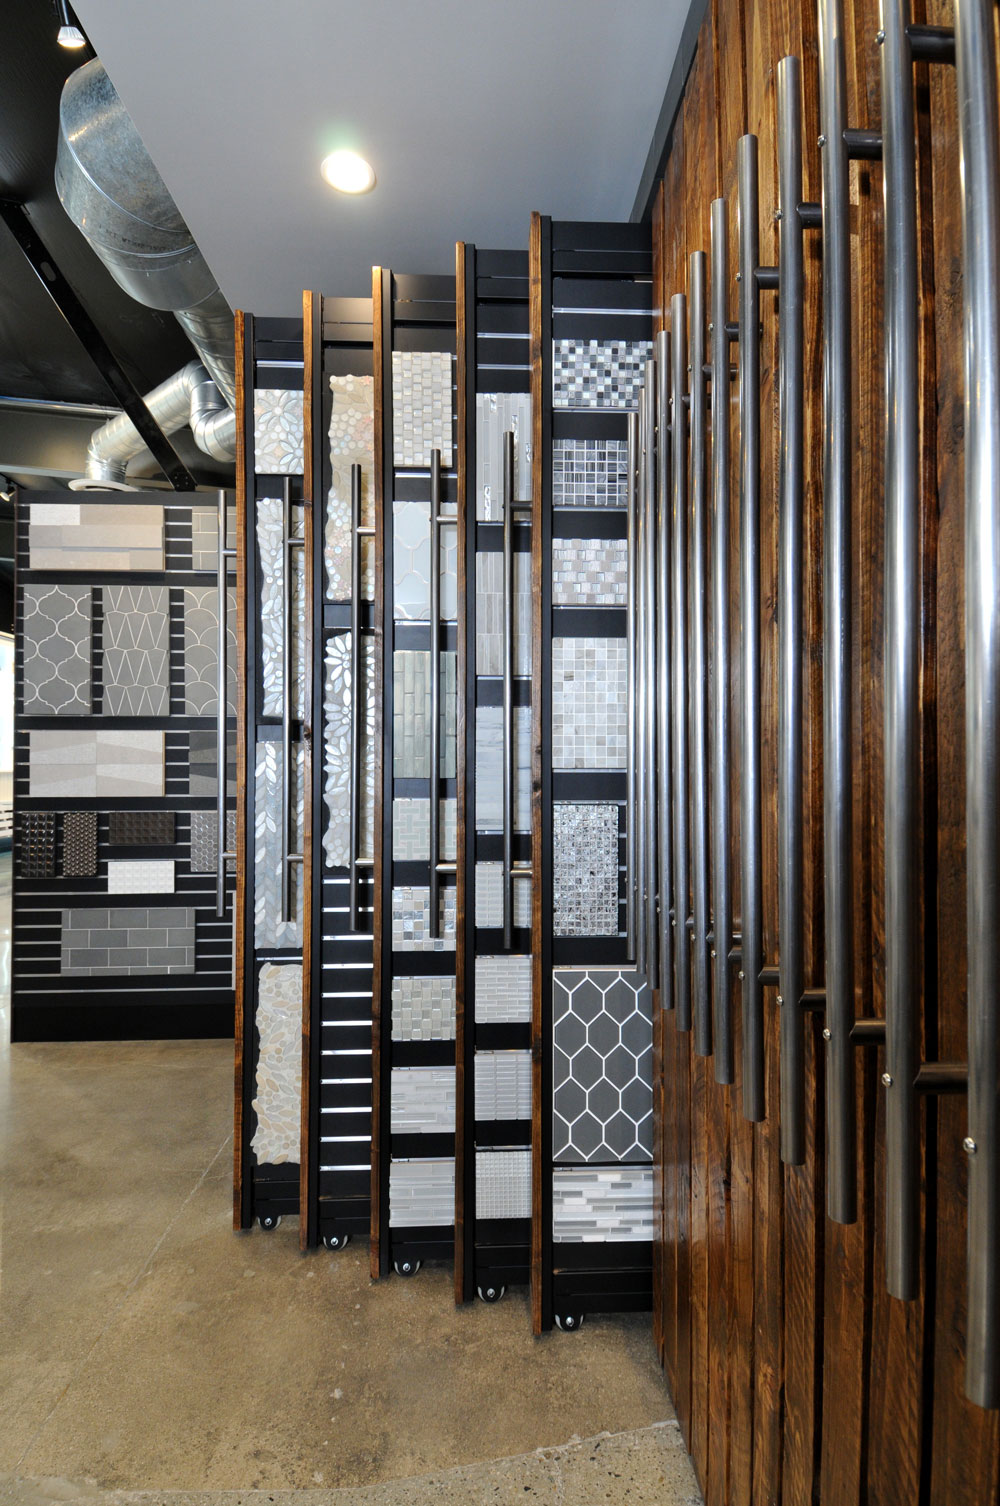 3-Waterford-Saxum-showroom-tile-sample-pullout-racks.jpg